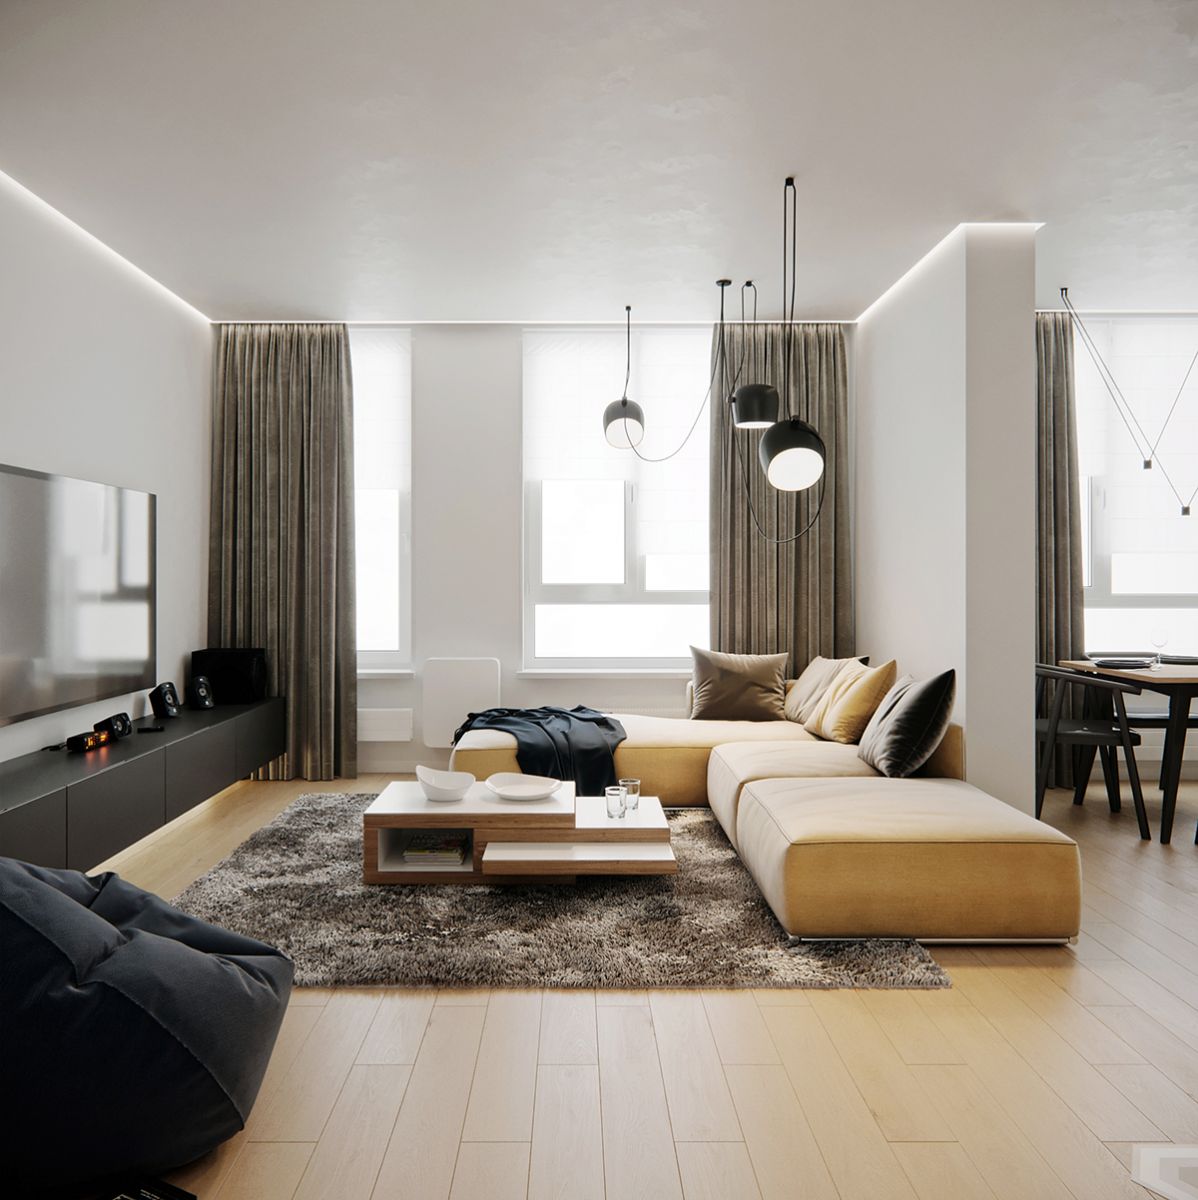 Bạn đang tìm kiếm một không gian sống đầy thuận tiện và tiện nghi tại Bình Tân? Thiết kế nội thất căn hộ chung cư EHOME 3 chính là giải pháp tối ưu cho bạn. Với thiết kế tinh tế và sang trọng, căn hộ tại EHOME 3 sẽ mang đến cho bạn một trải nghiệm sống đích thực.